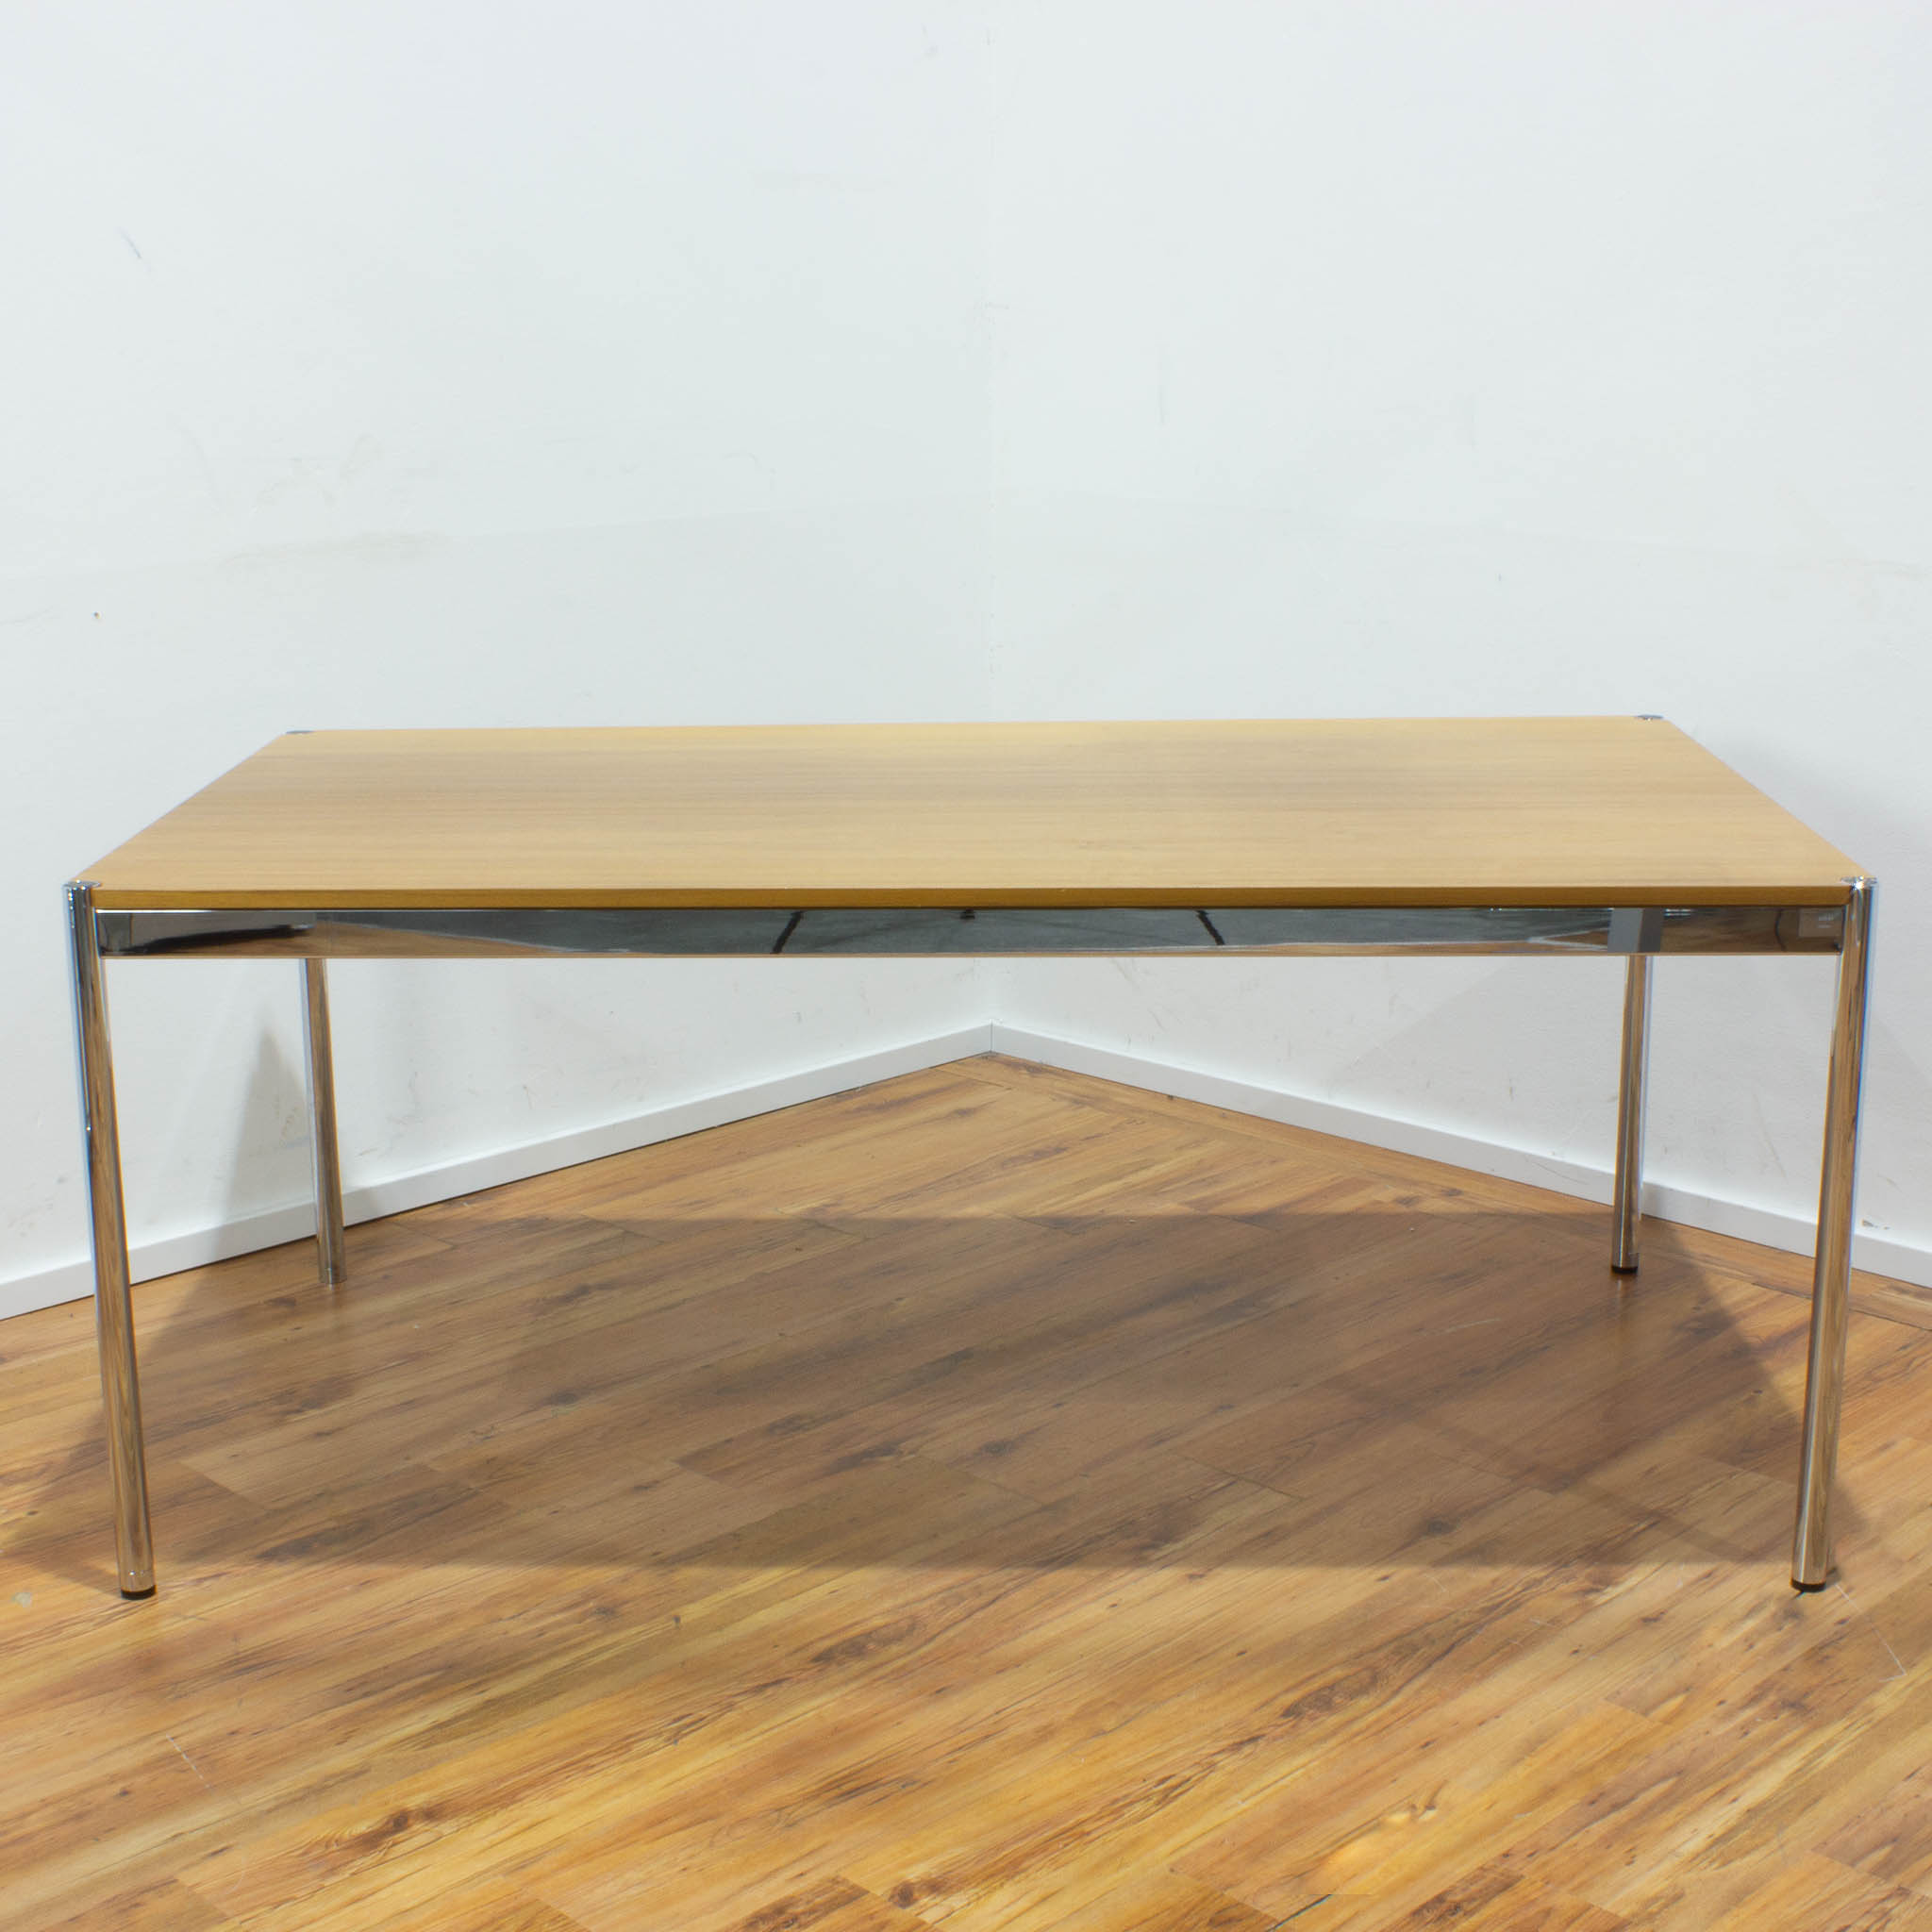 USM Haller Schreibtisch - Tischplatte buche esche - gebraucht - 175 x 100 cm